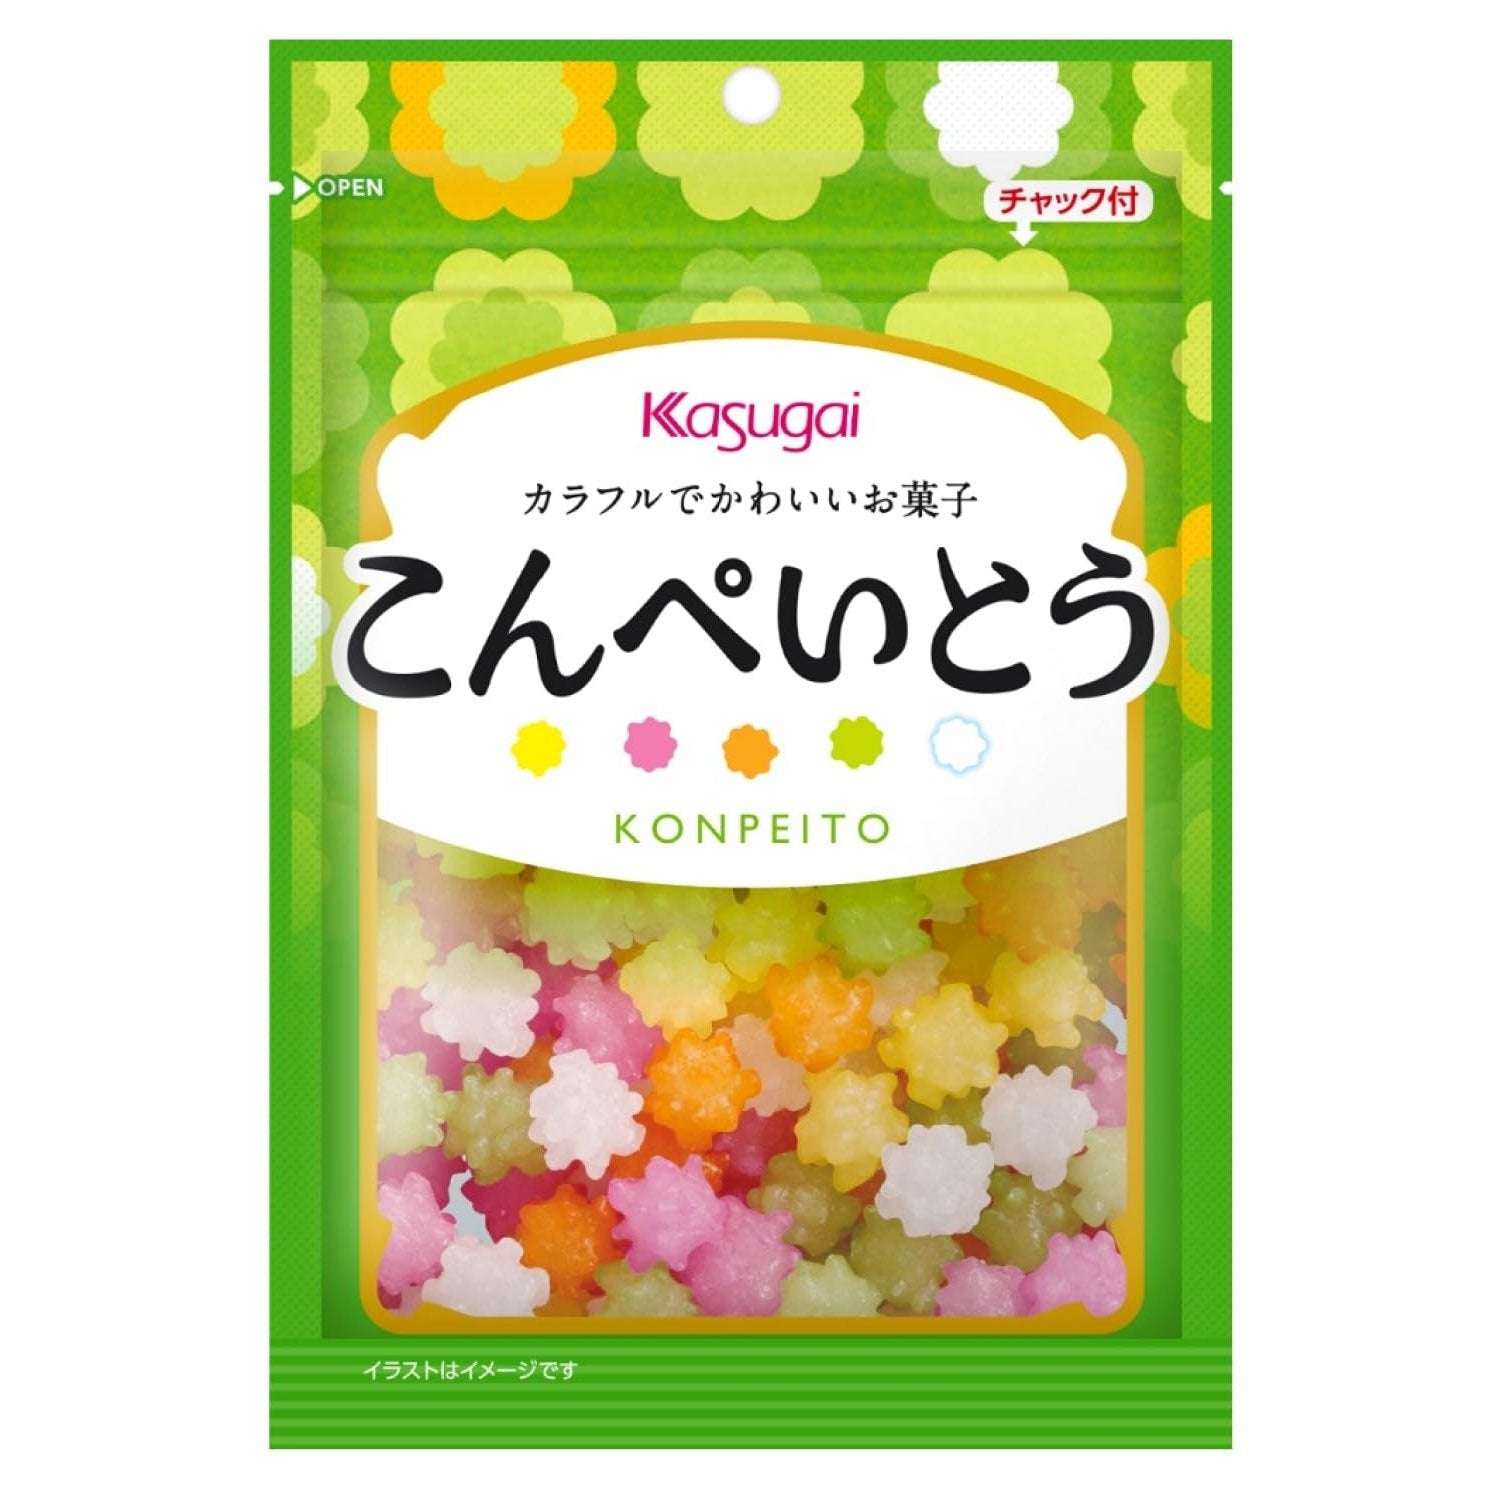 Kasugai Konpeito Sugar Candy Japanese Star Candy 76g